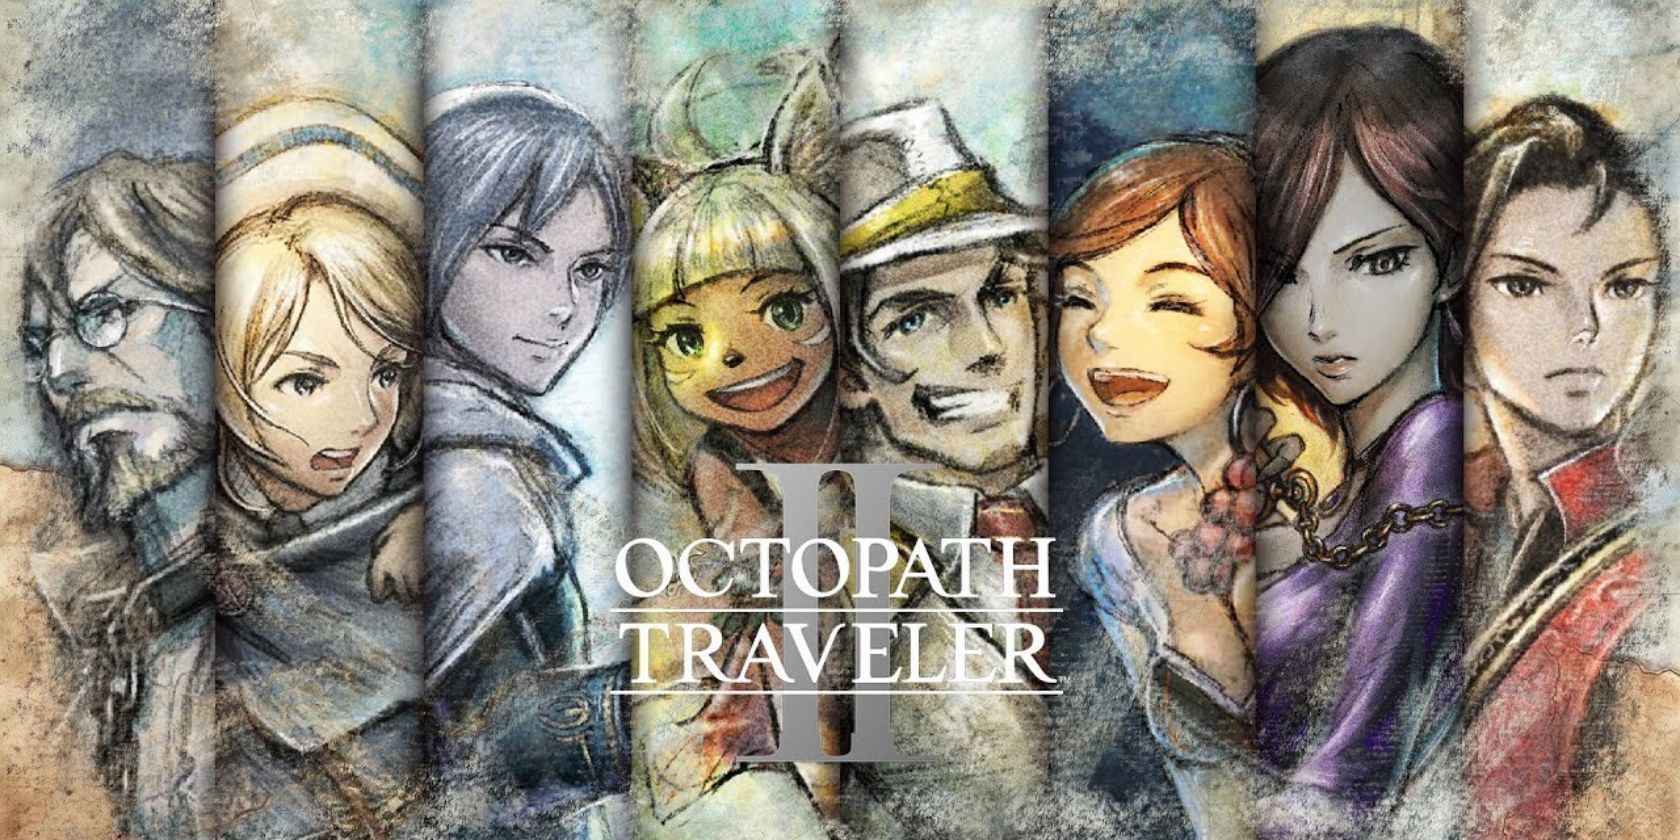 Octopath Traveler 2 Character Art